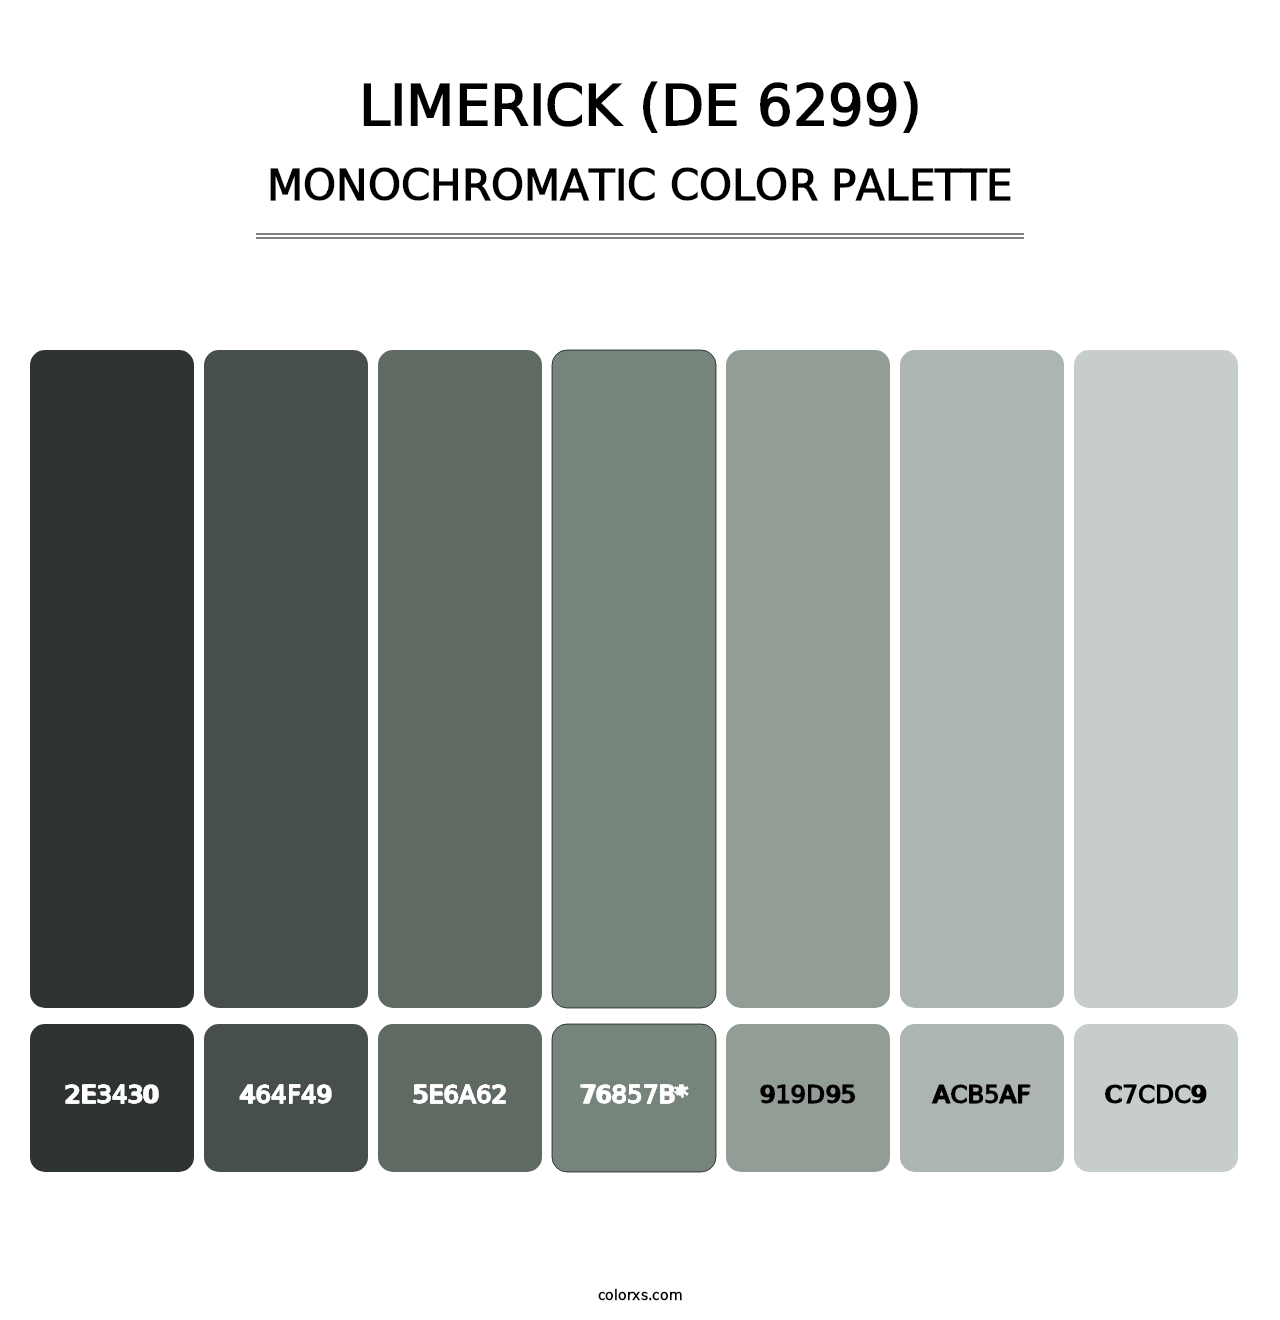 Limerick (DE 6299) - Monochromatic Color Palette